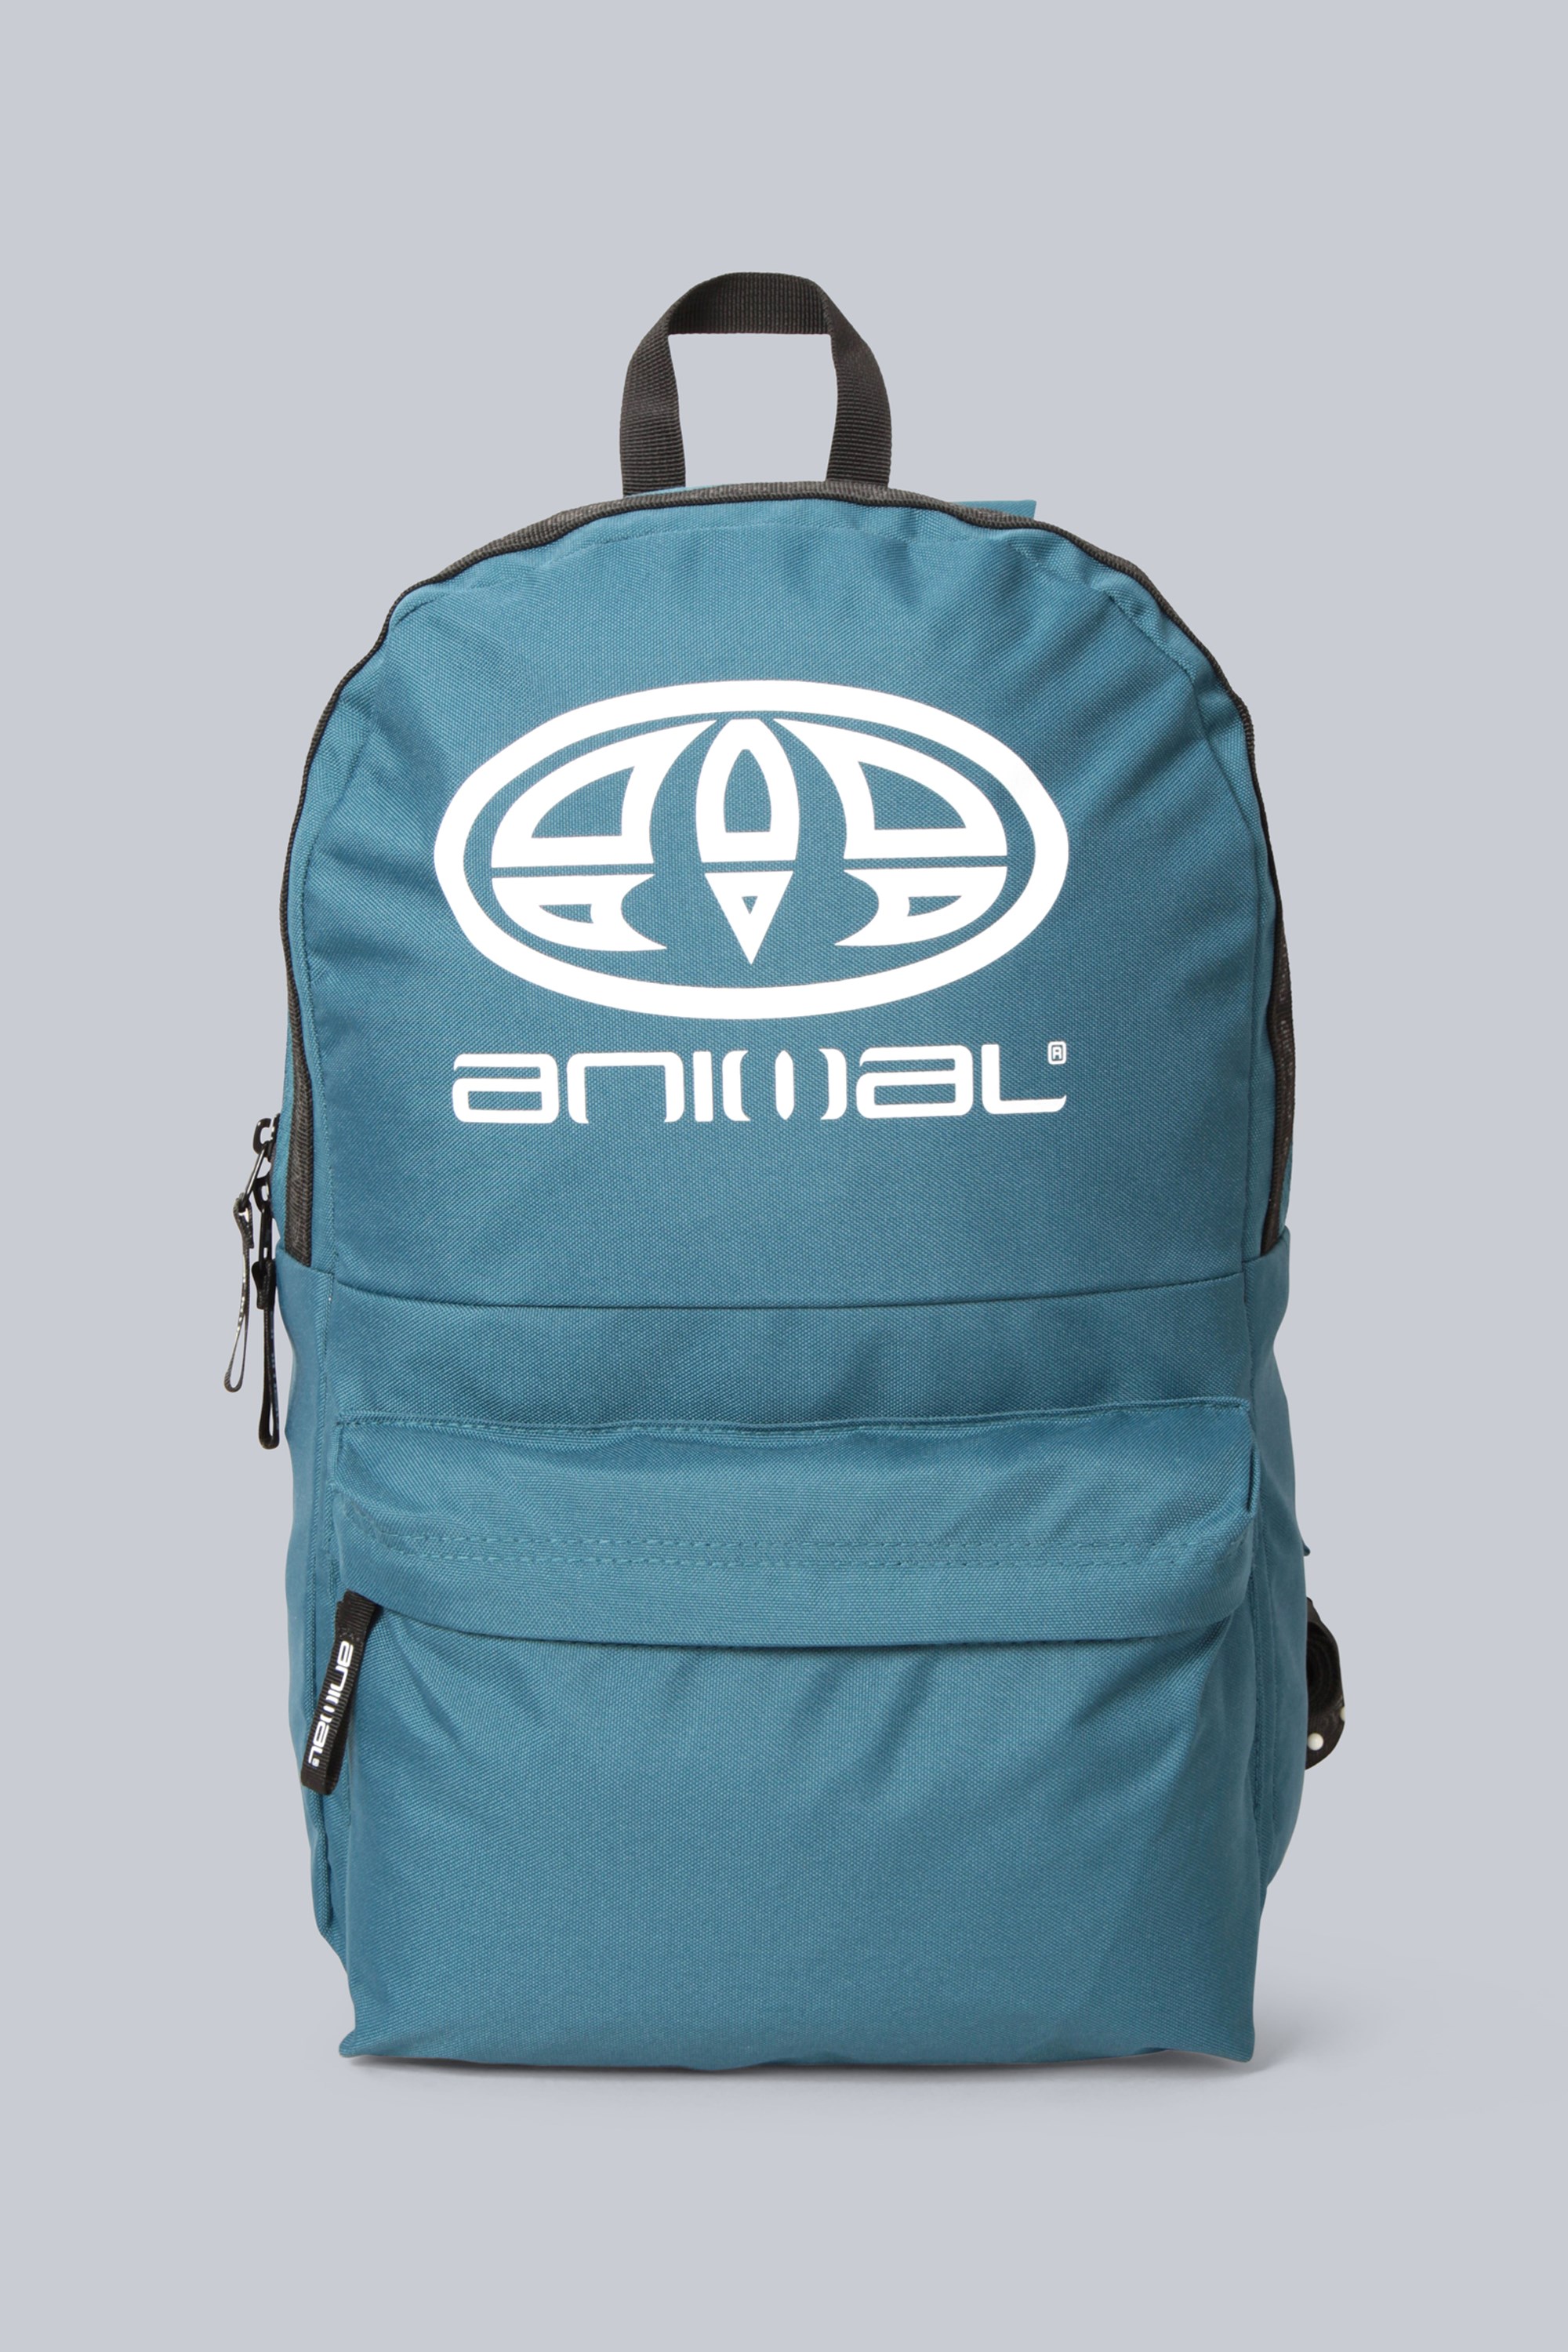 Animal plecak z logo 20 l z materiałów pochodzących z recyklingu - Teal